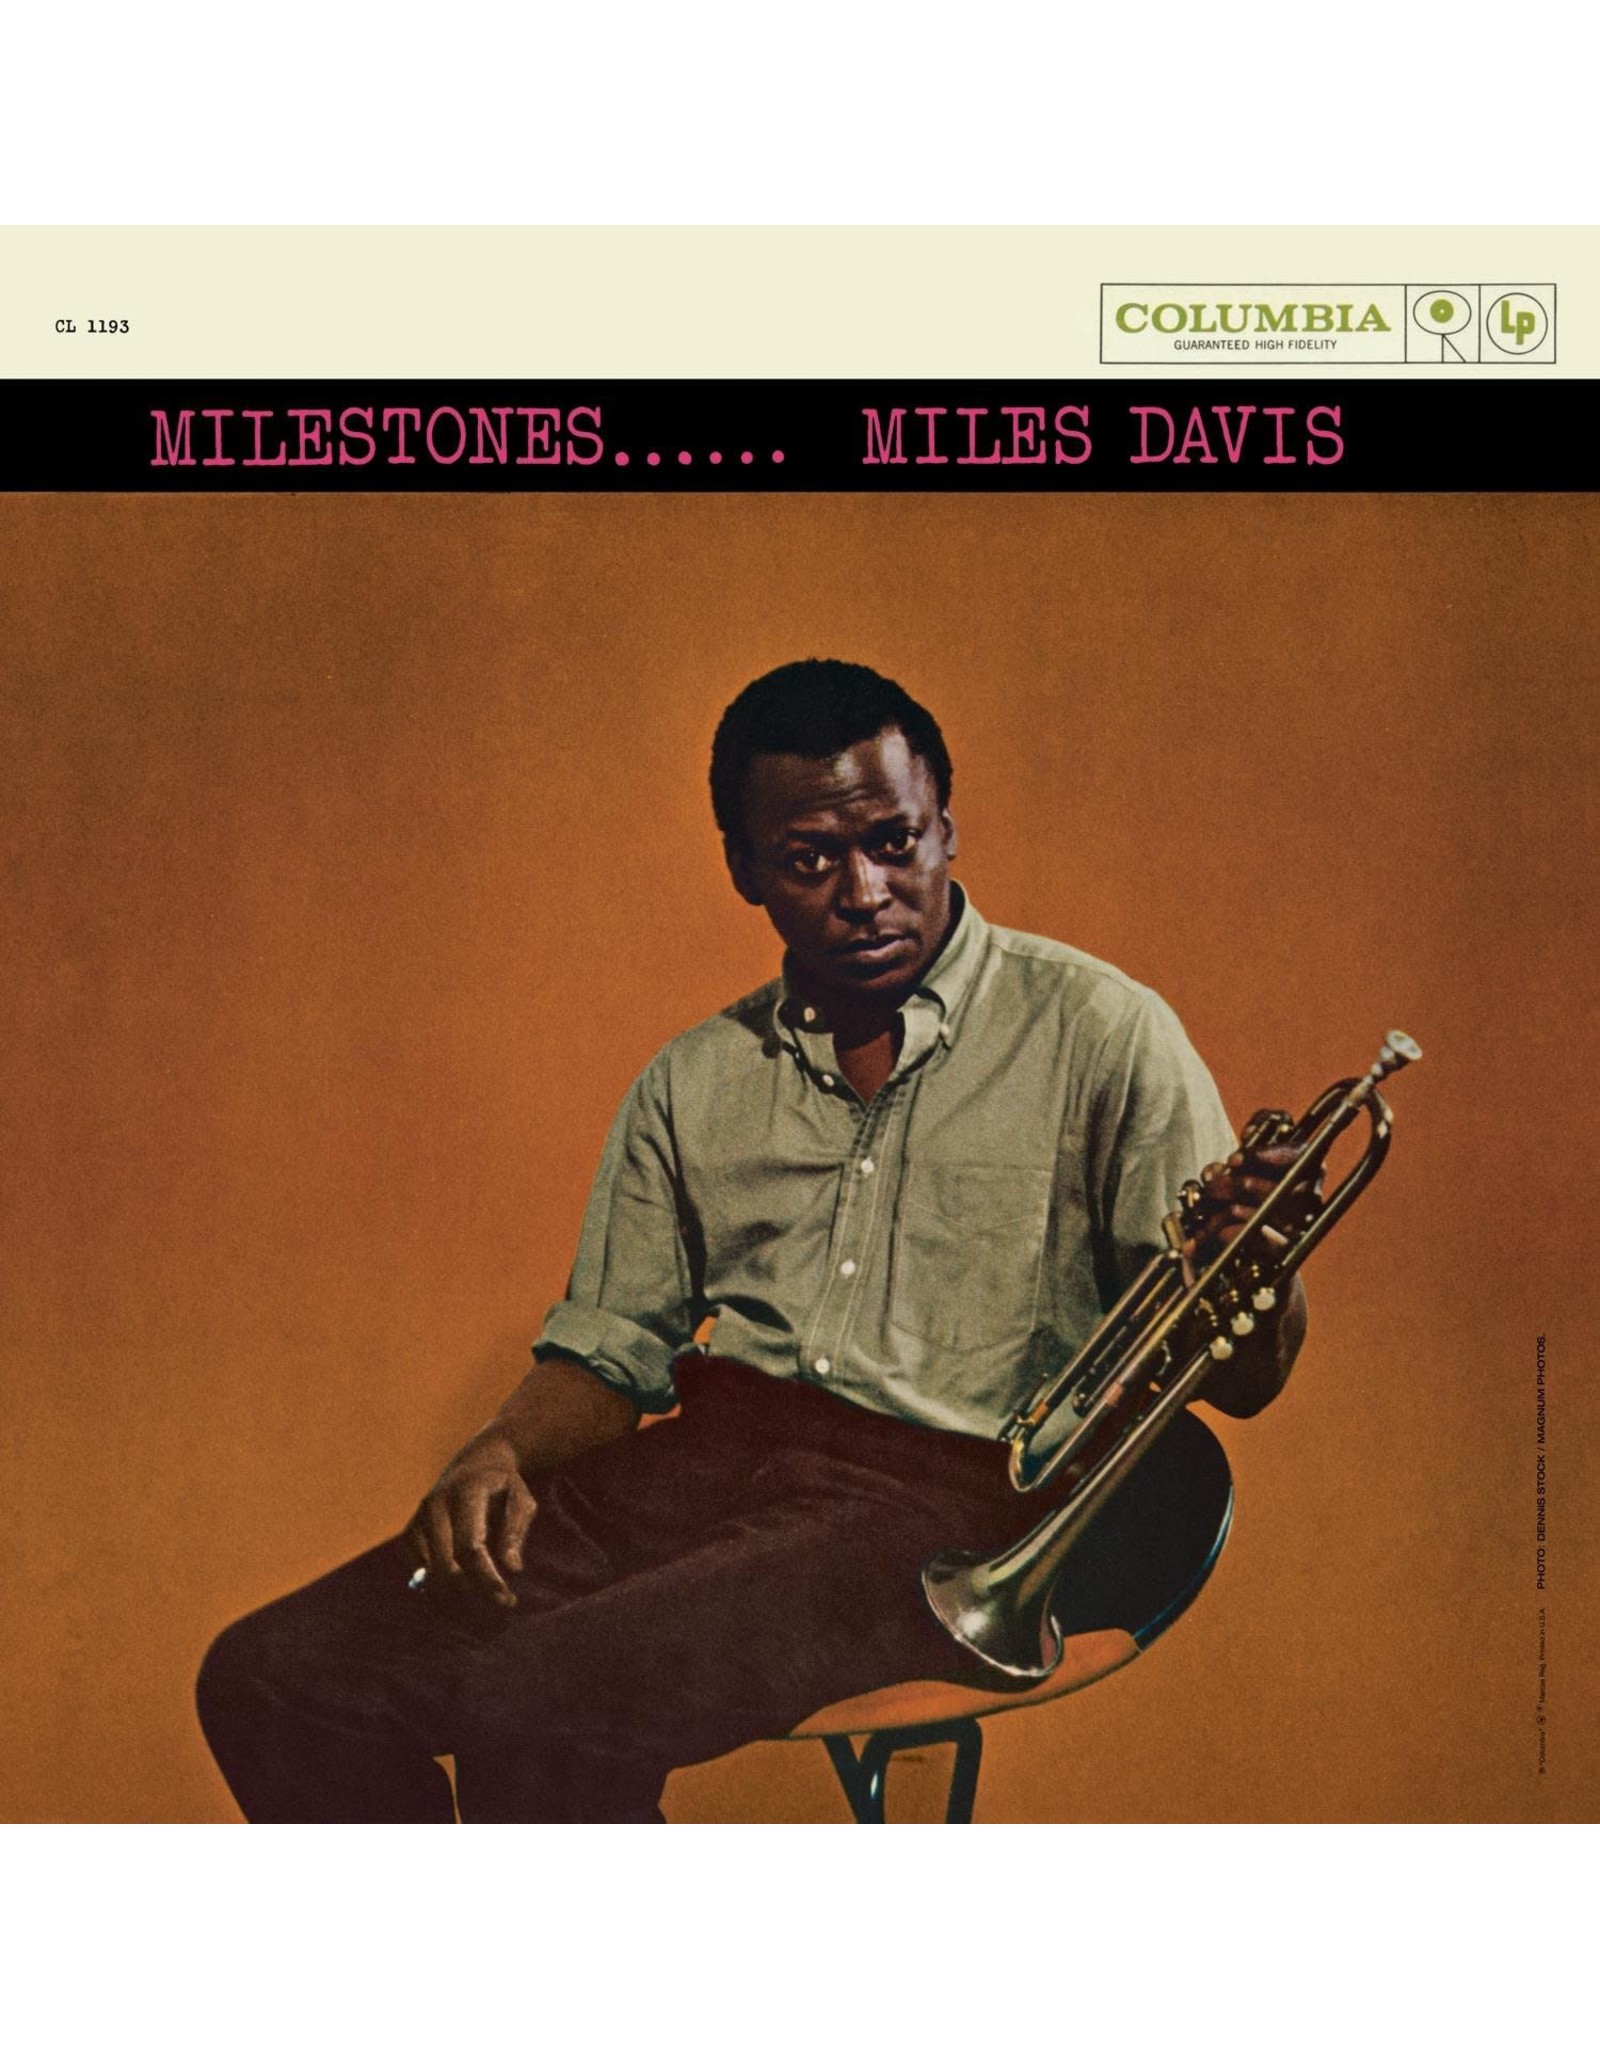 Miles Davis - Milestones (Mono)